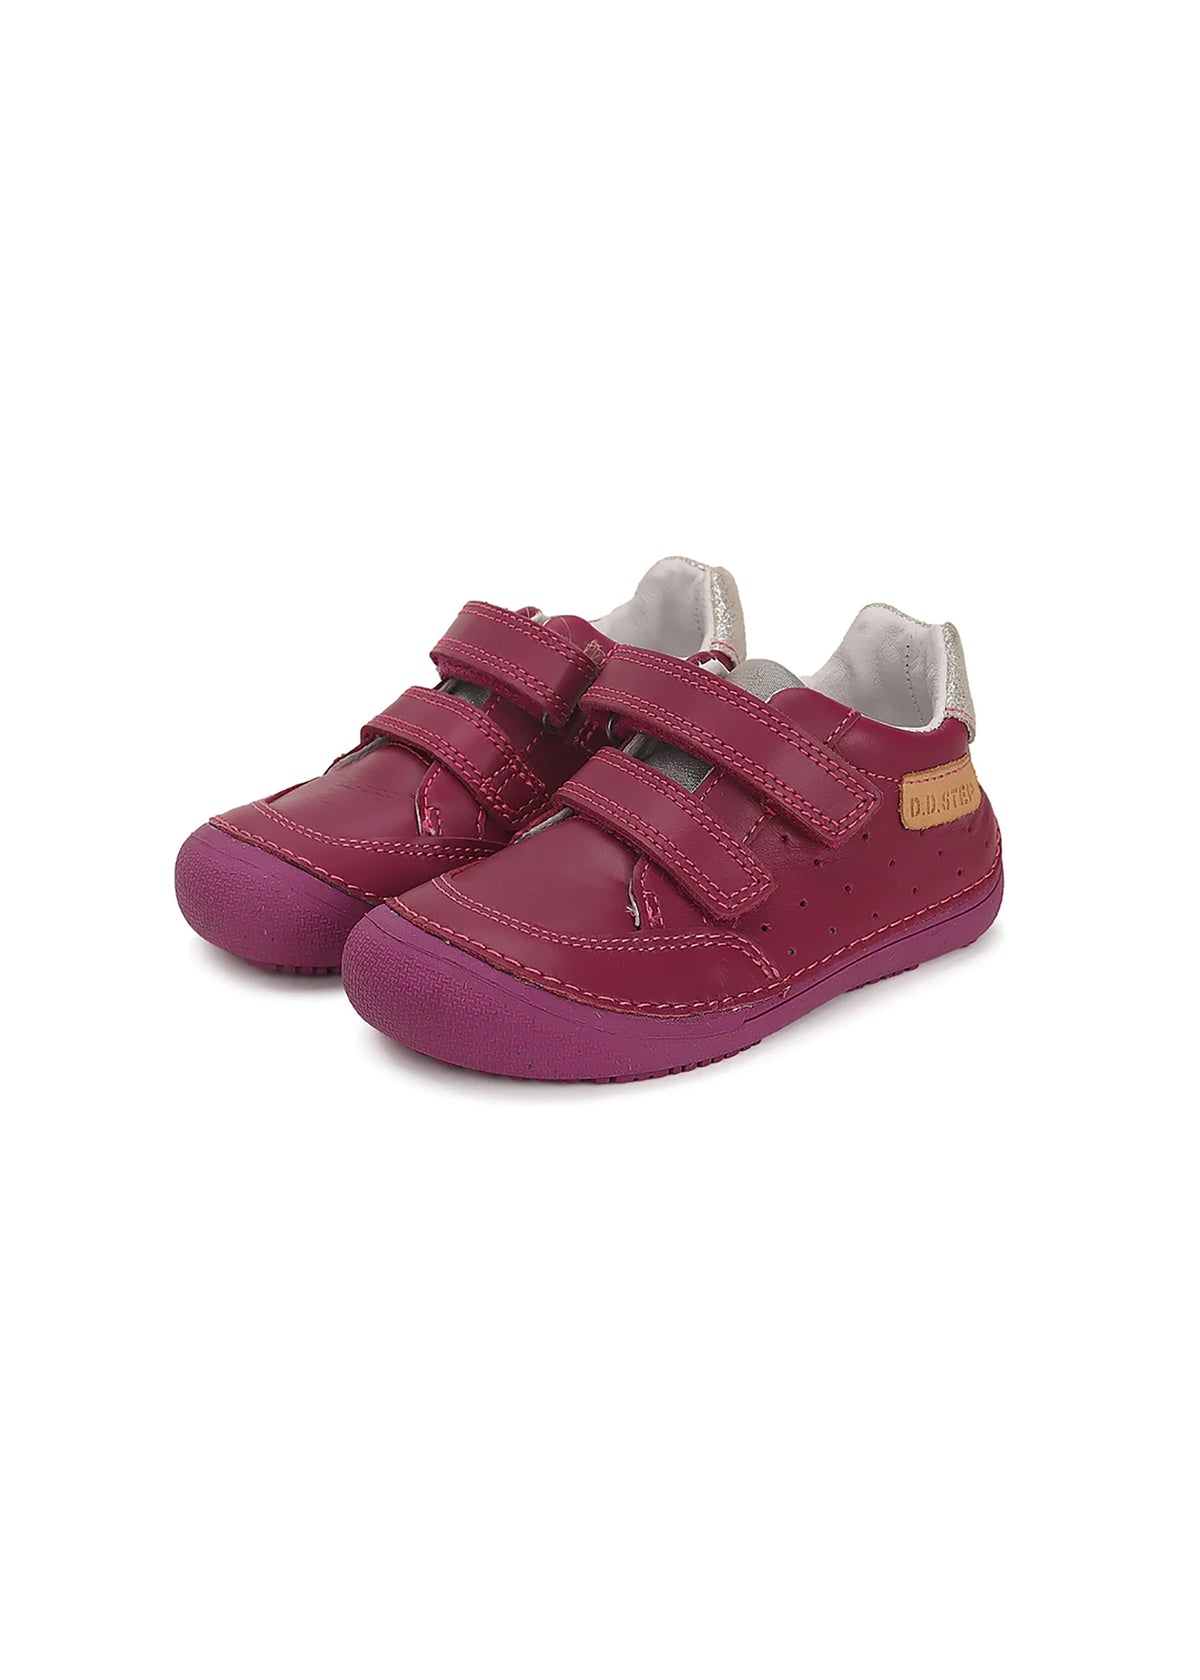 Barfotasneakers för barn - mörkrosa läder